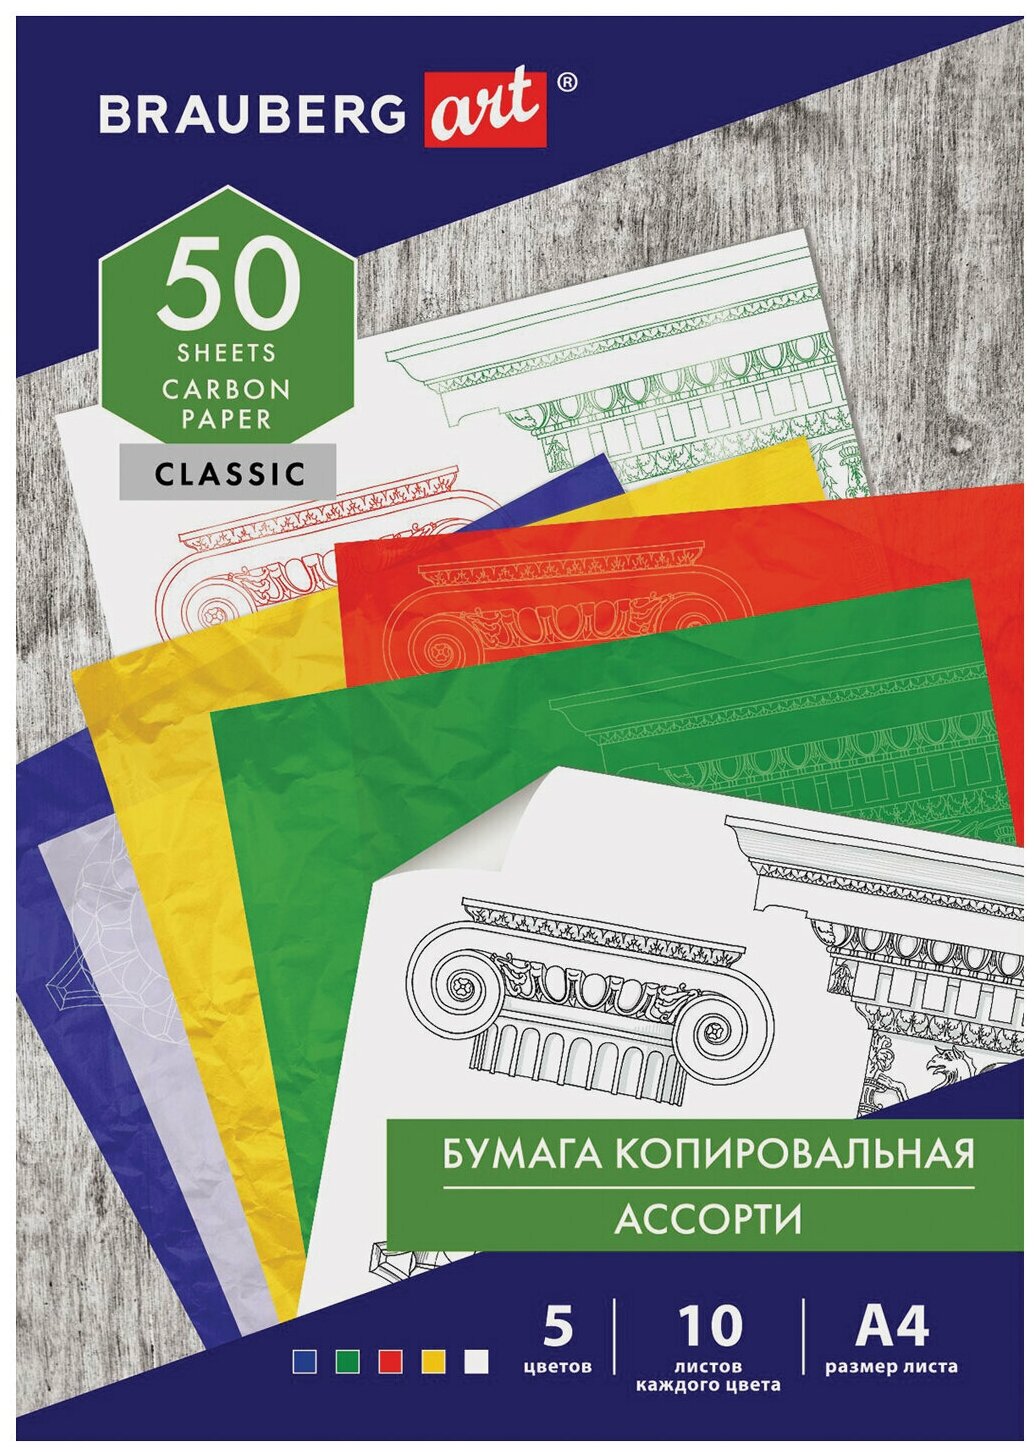 Бумага копировальная (копирка) 5 цветов х 10 листов (синяя, белая, красная, желтая, зеленая), BRAUBERG ART «CLASSIC», 112405